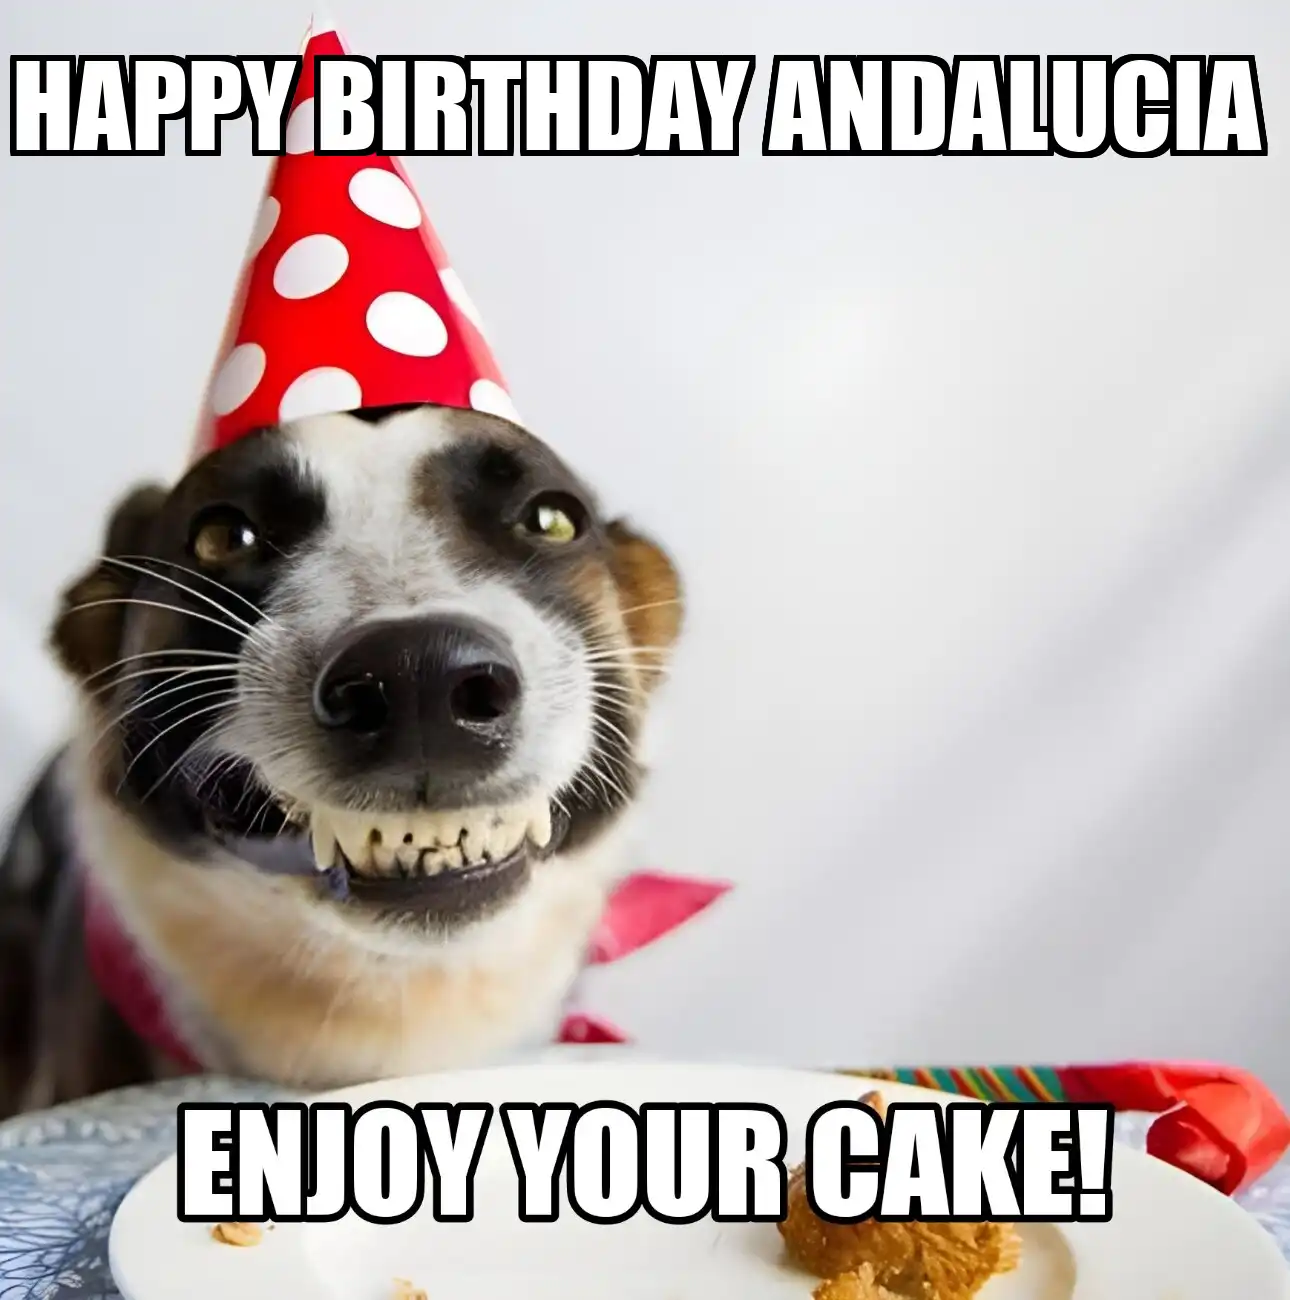 Happy Birthday Andalucia Enjoy Your Cake Dog Meme